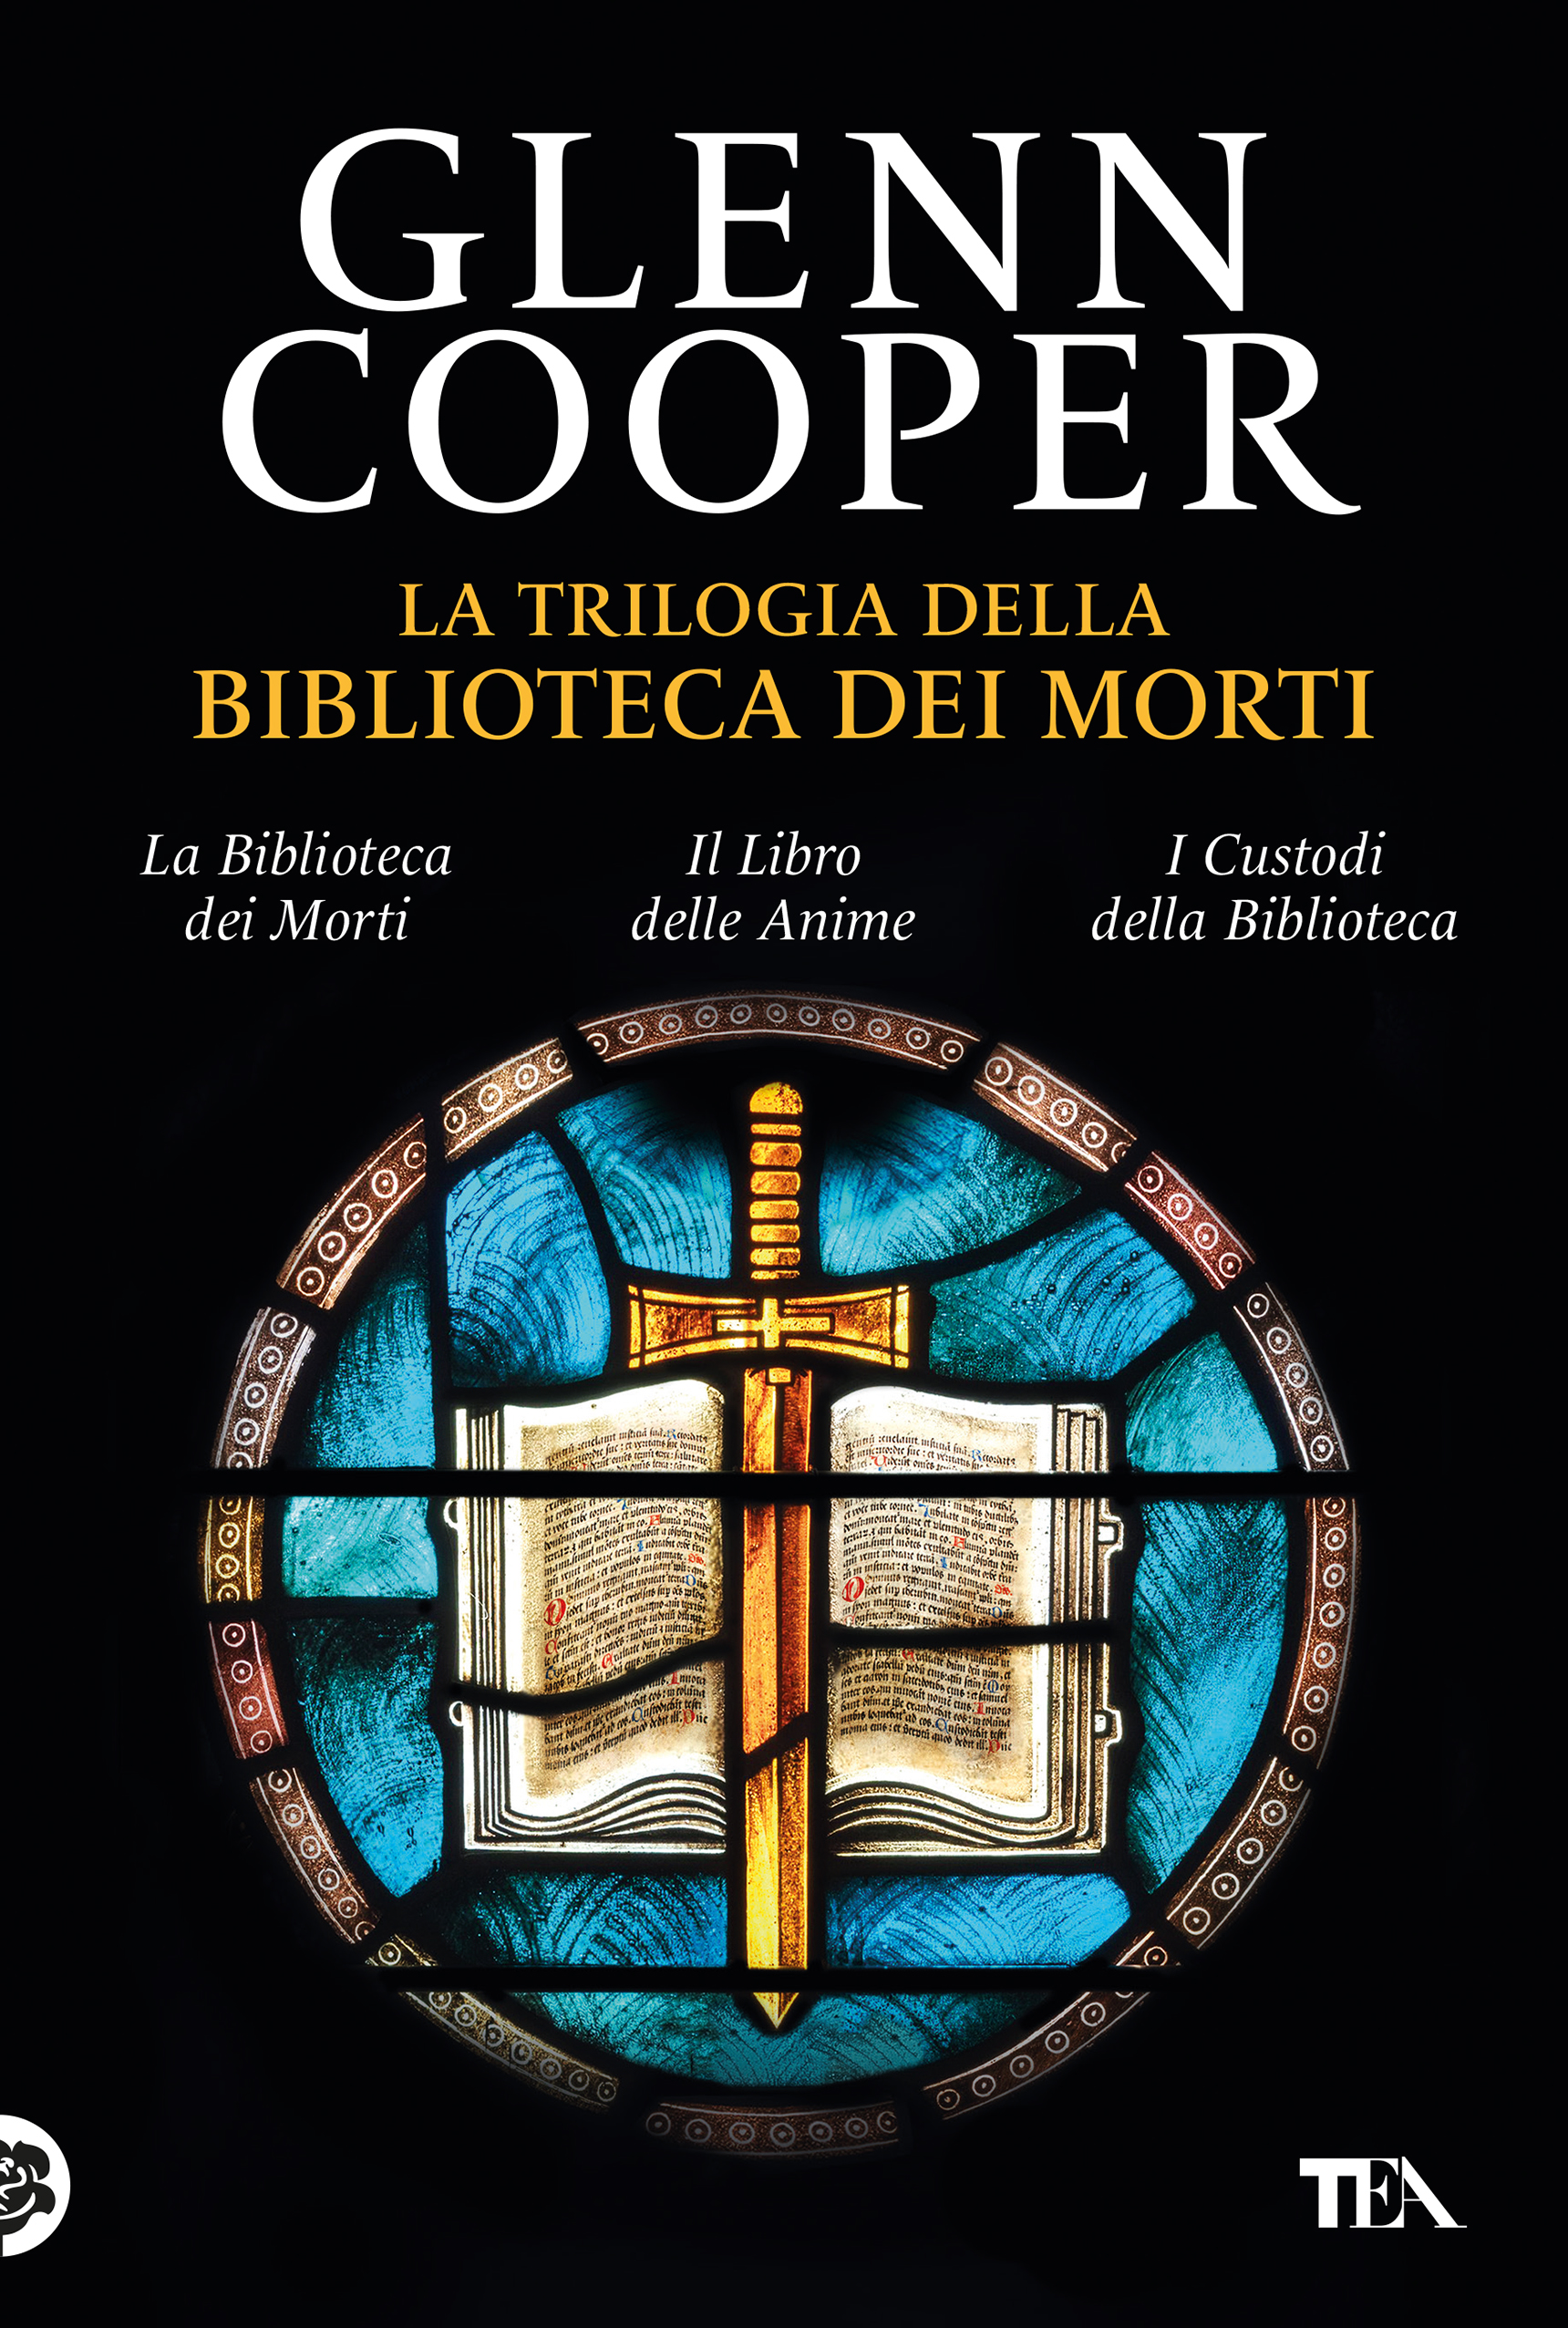 Glenn Cooper - La trilogia della Biblioteca dei Morti — TEA Libri